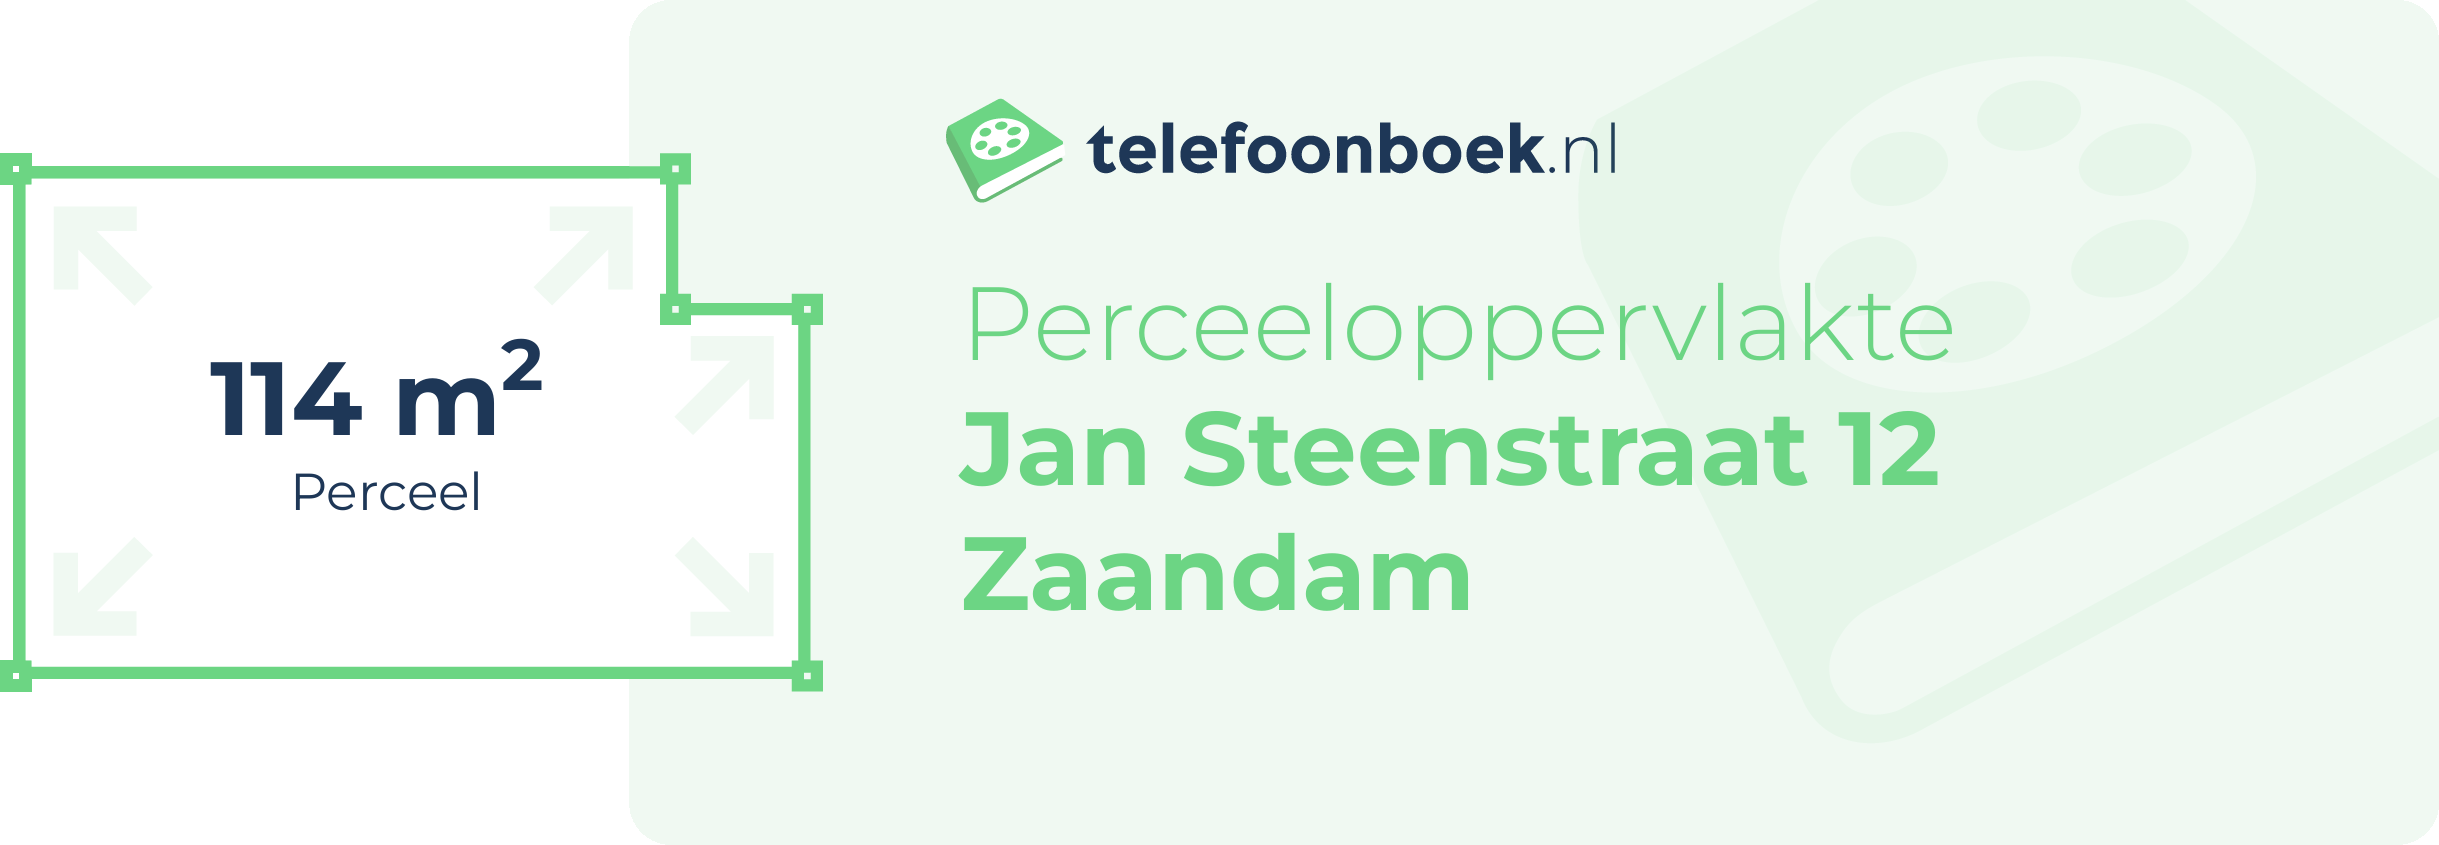 Perceeloppervlakte Jan Steenstraat 12 Zaandam